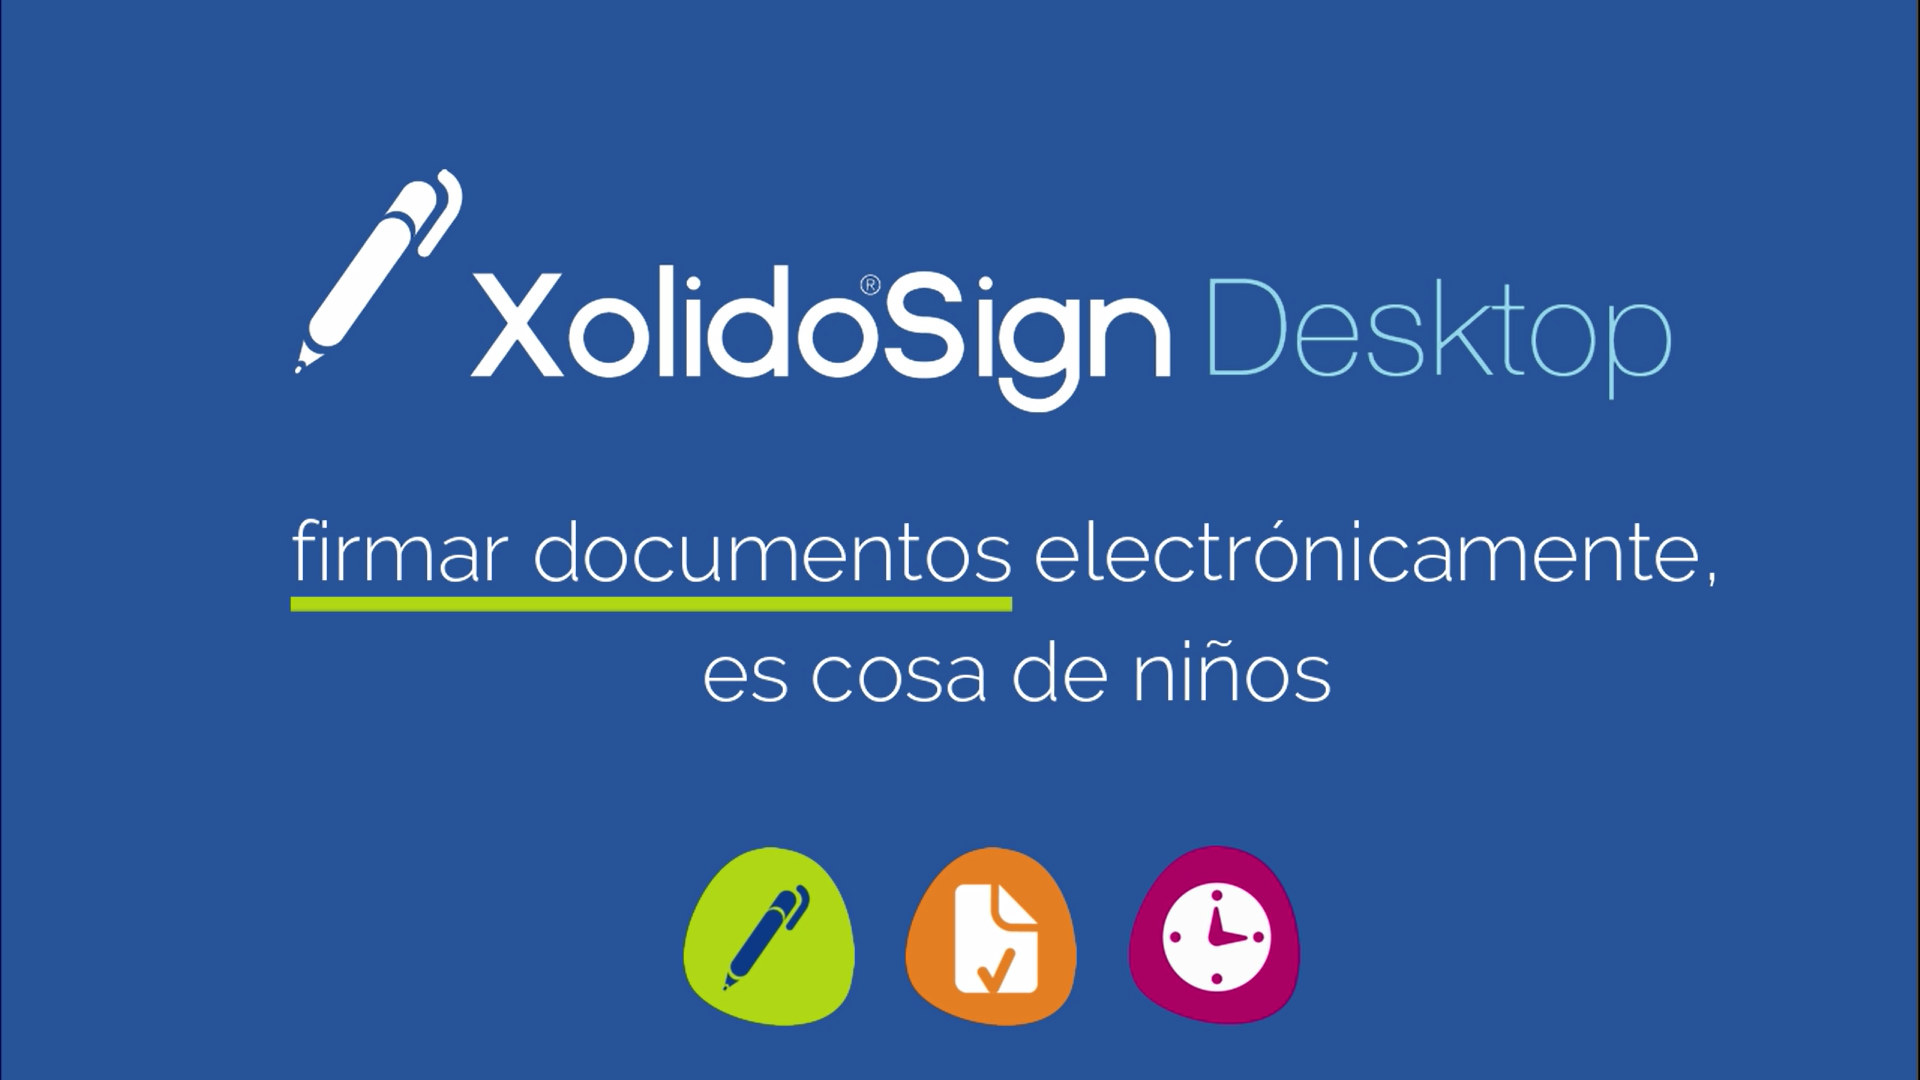 Firmar documentos electrónicamente con XolidoSign Desktop